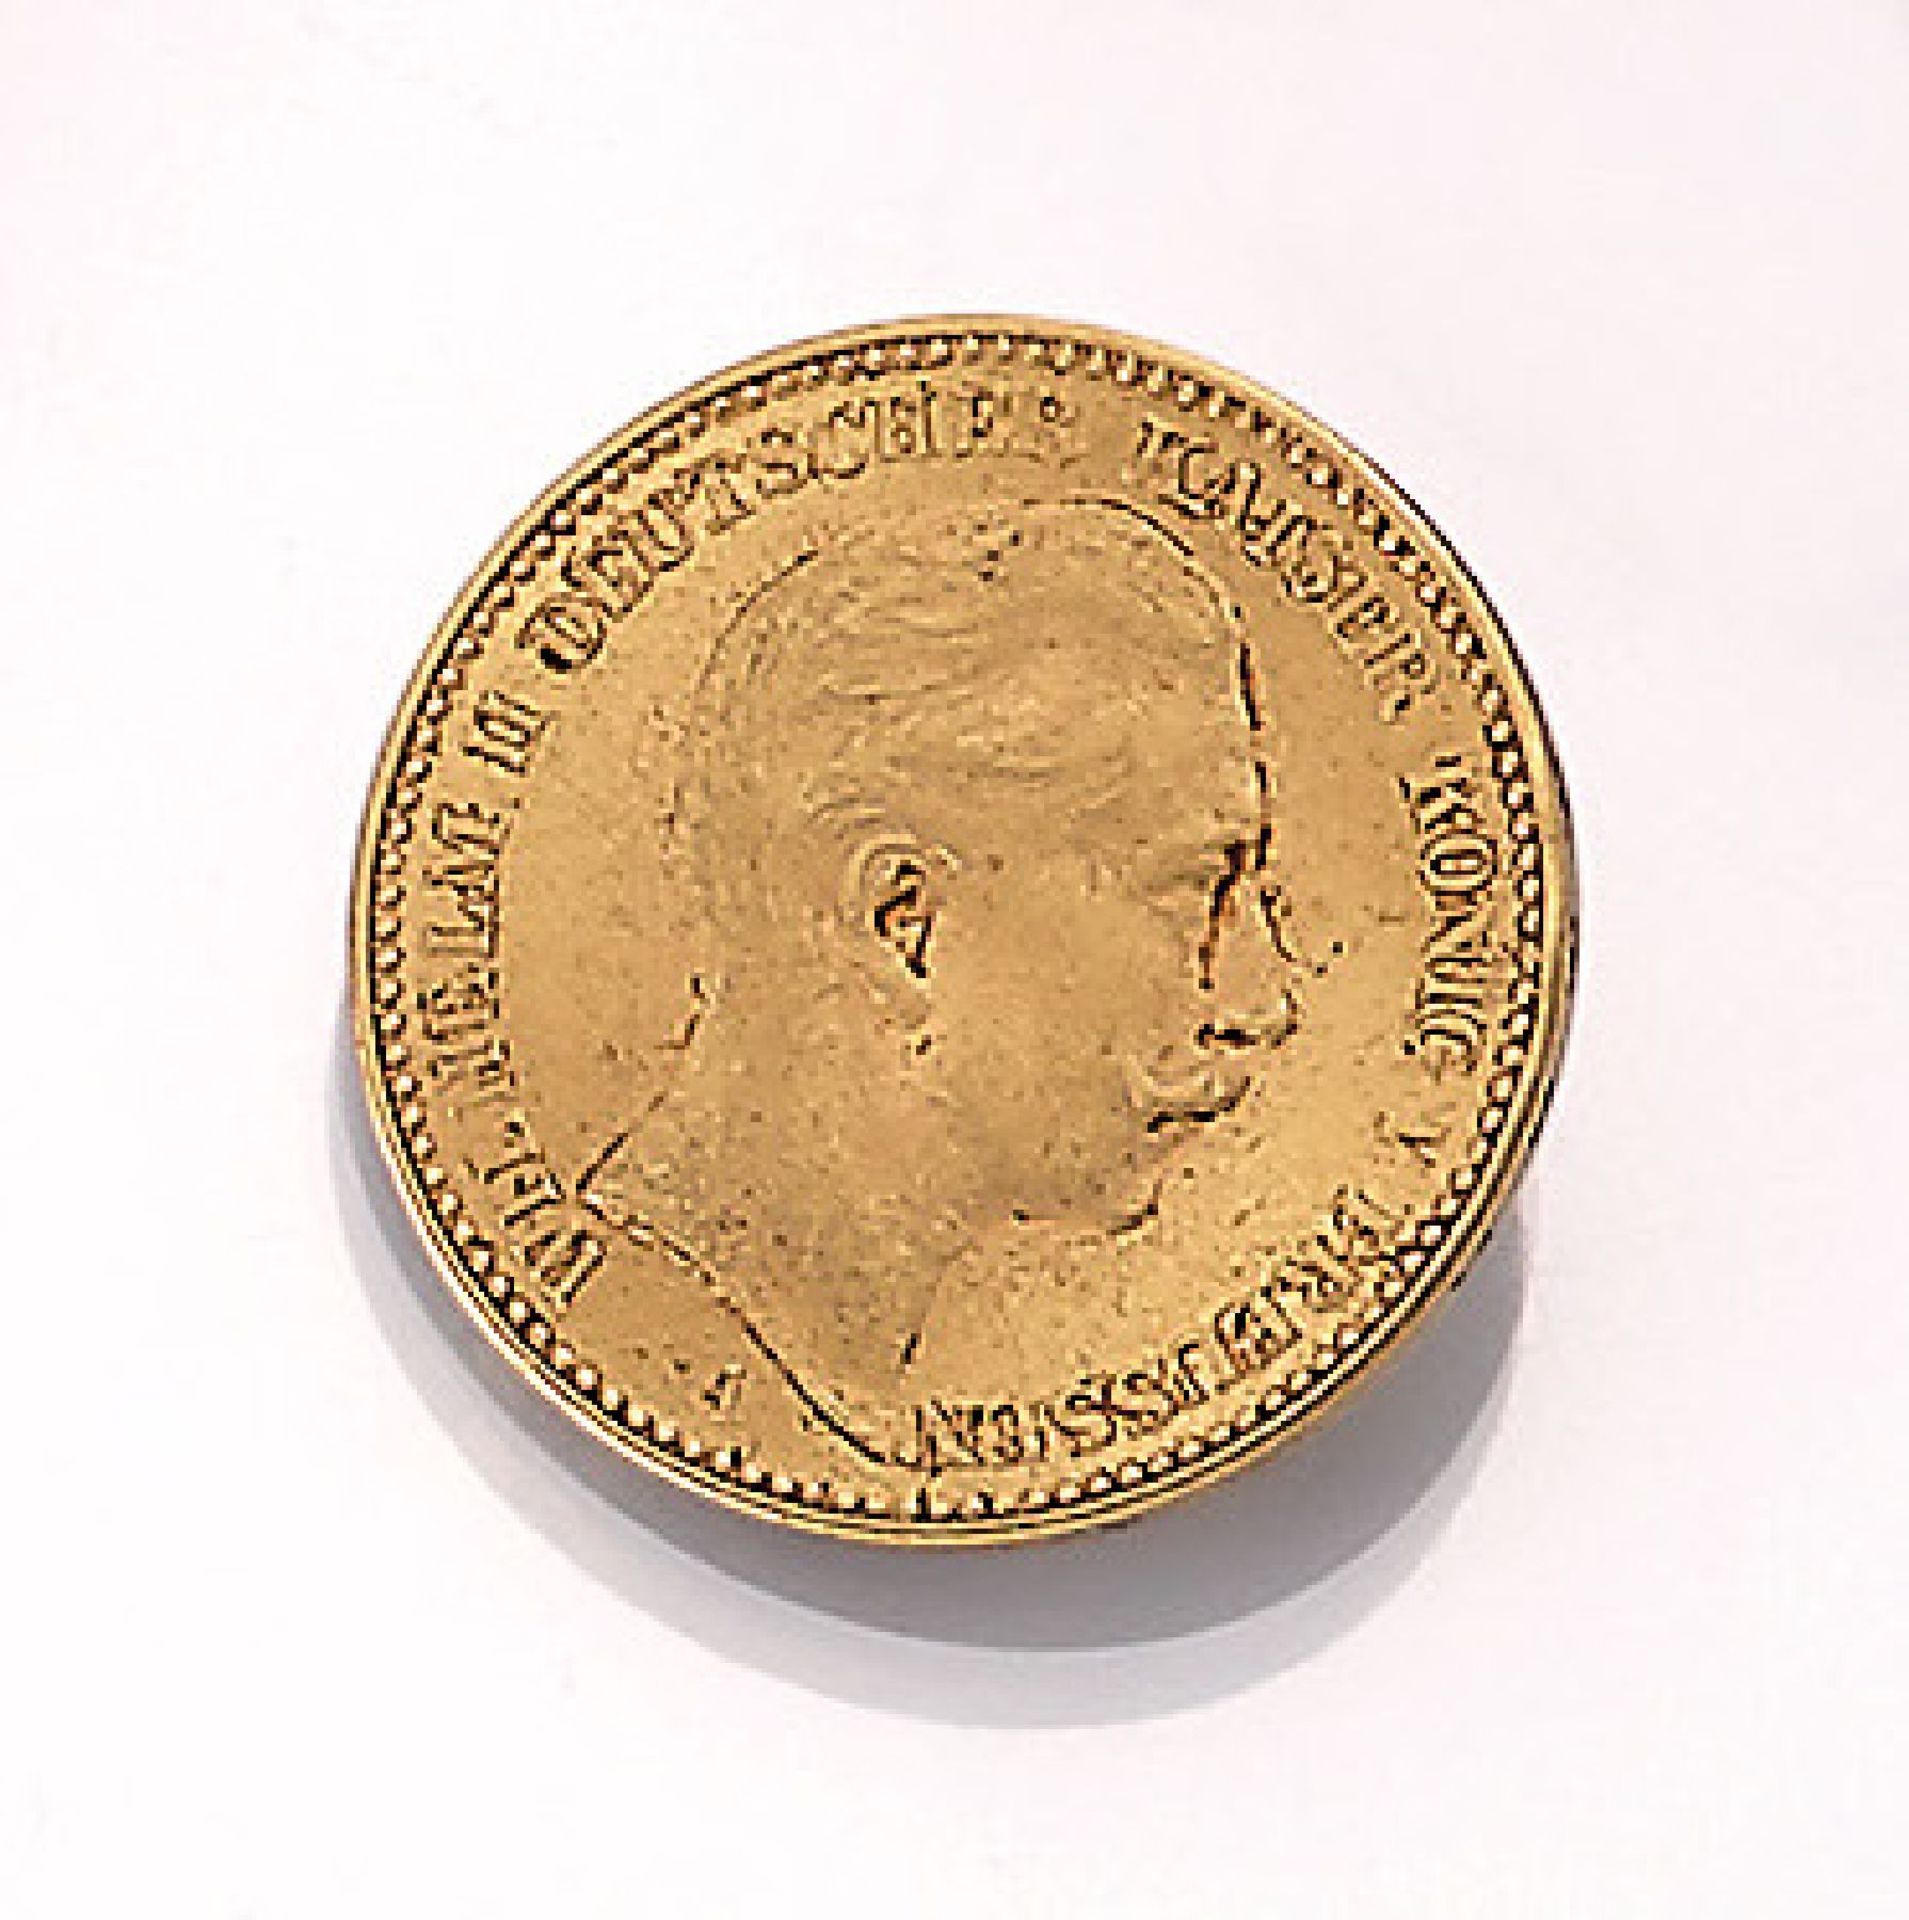 Goldmünze, 20 Mark, Deutsches Reich, 1911, Wilhelm II., Deutscher Kaiser, König von Preussen,